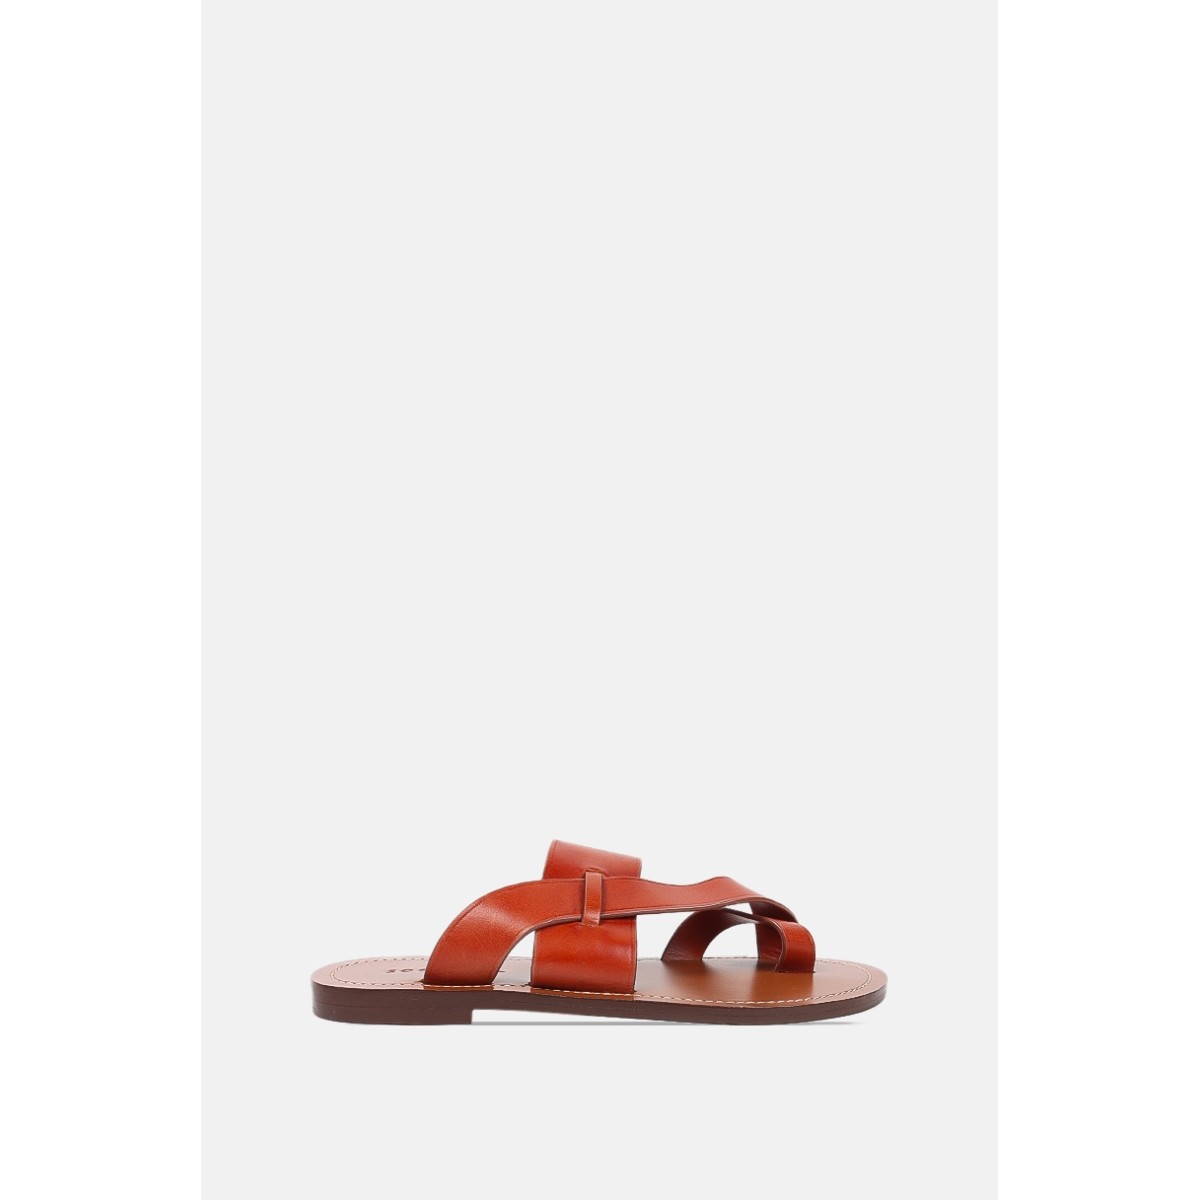 Soeur "Maldives" Sandals